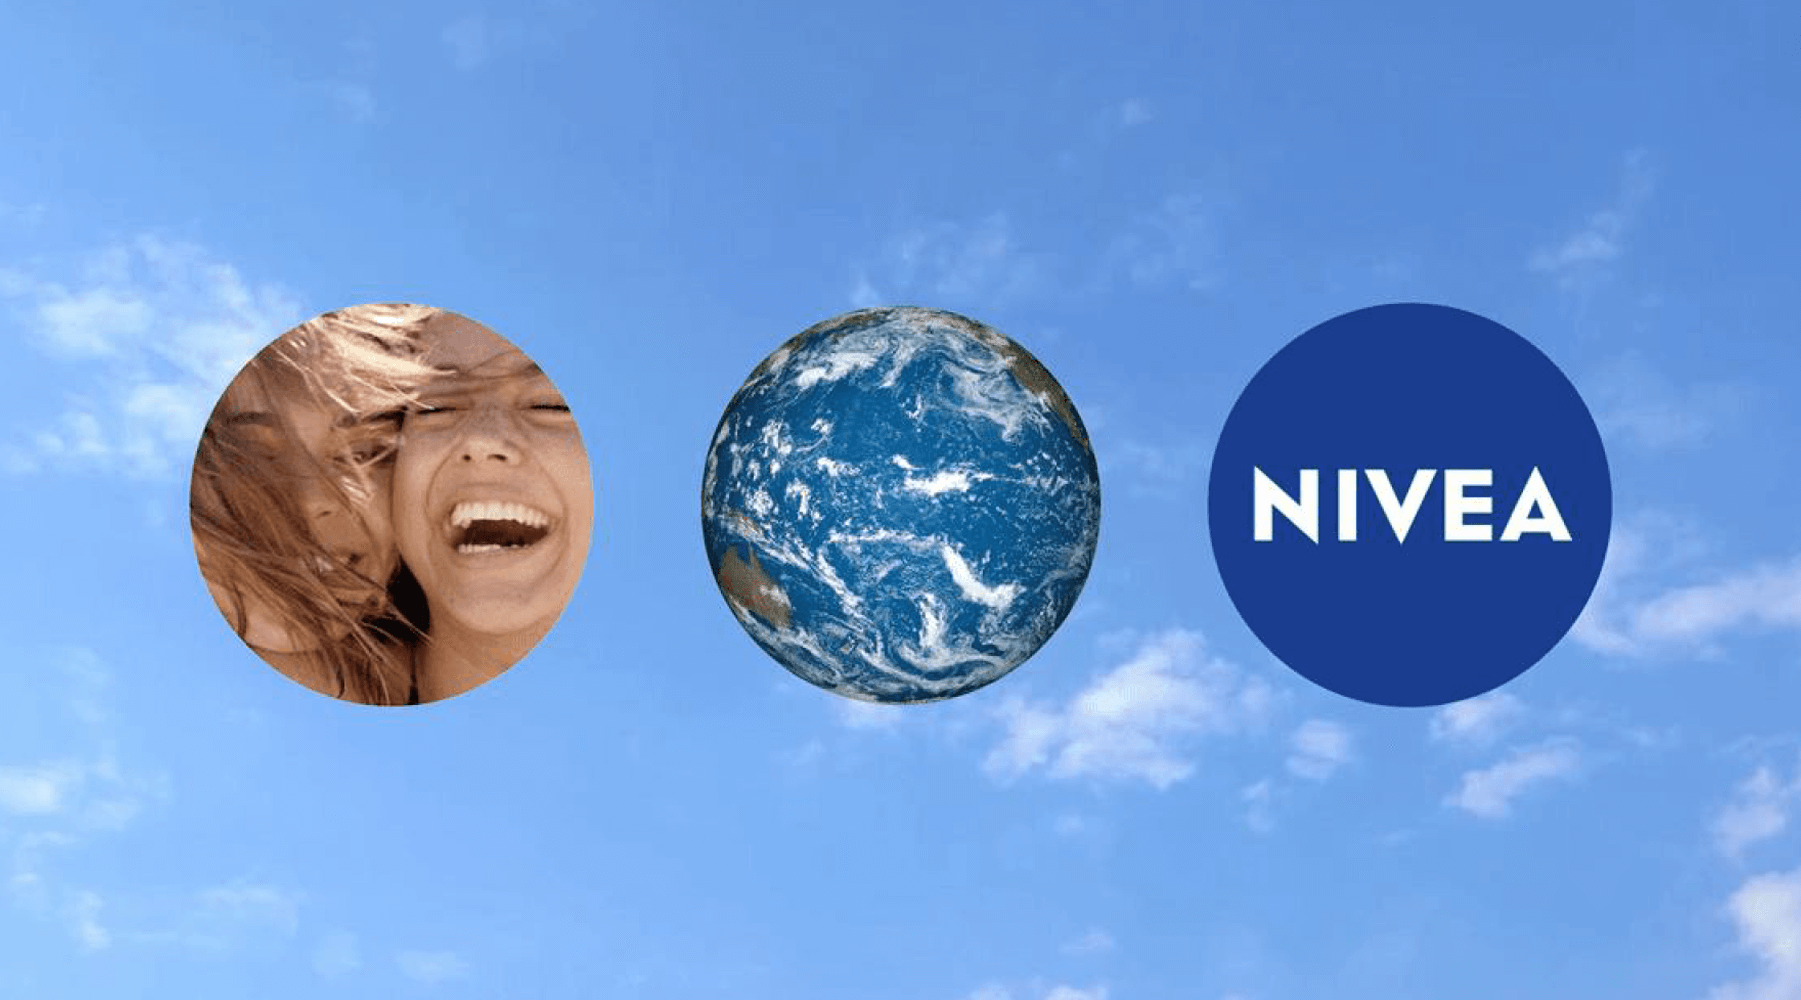 Logo de Nivea y símbolos de sustentabilidad